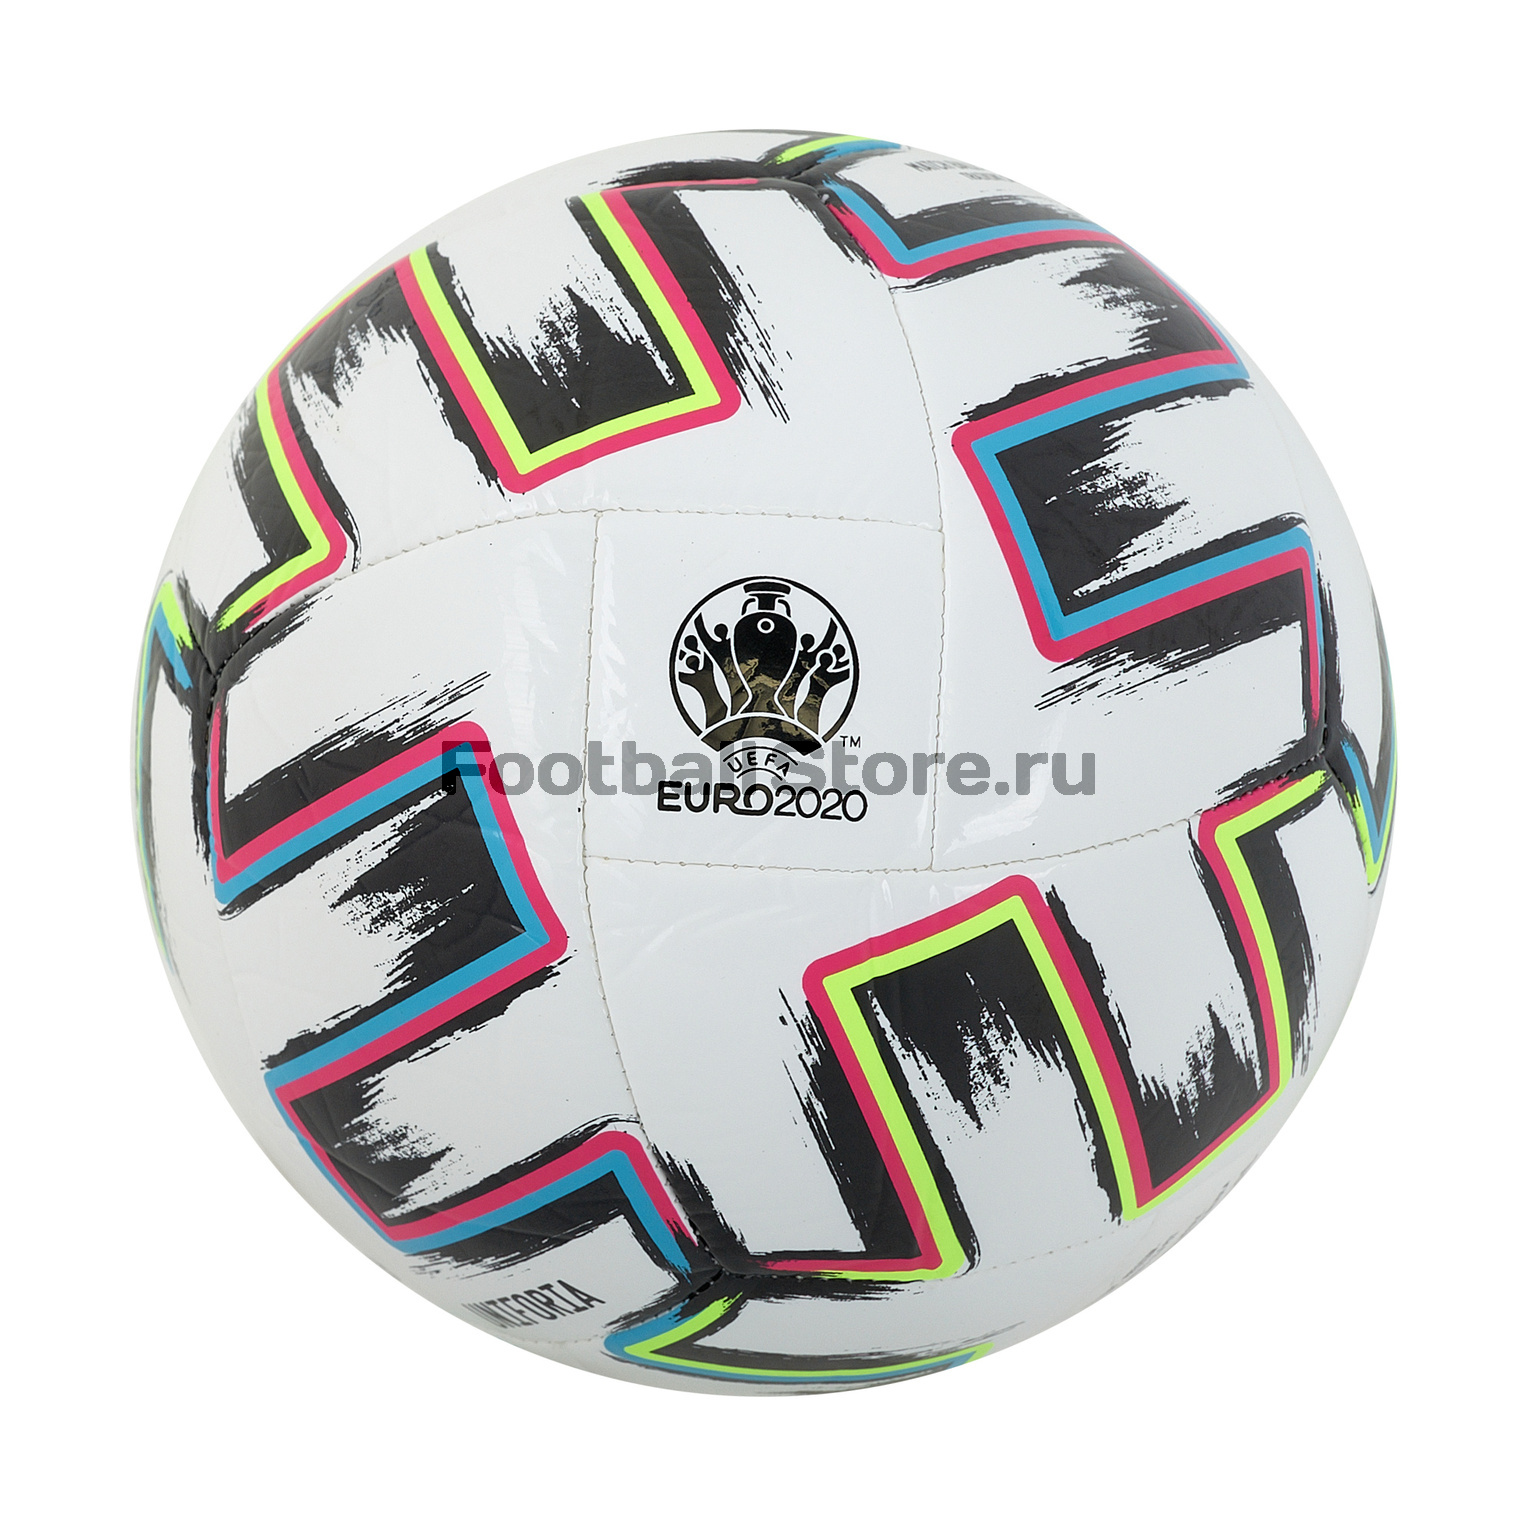 Футзальный мяч Adidas Uniforia Training Sala FH7349